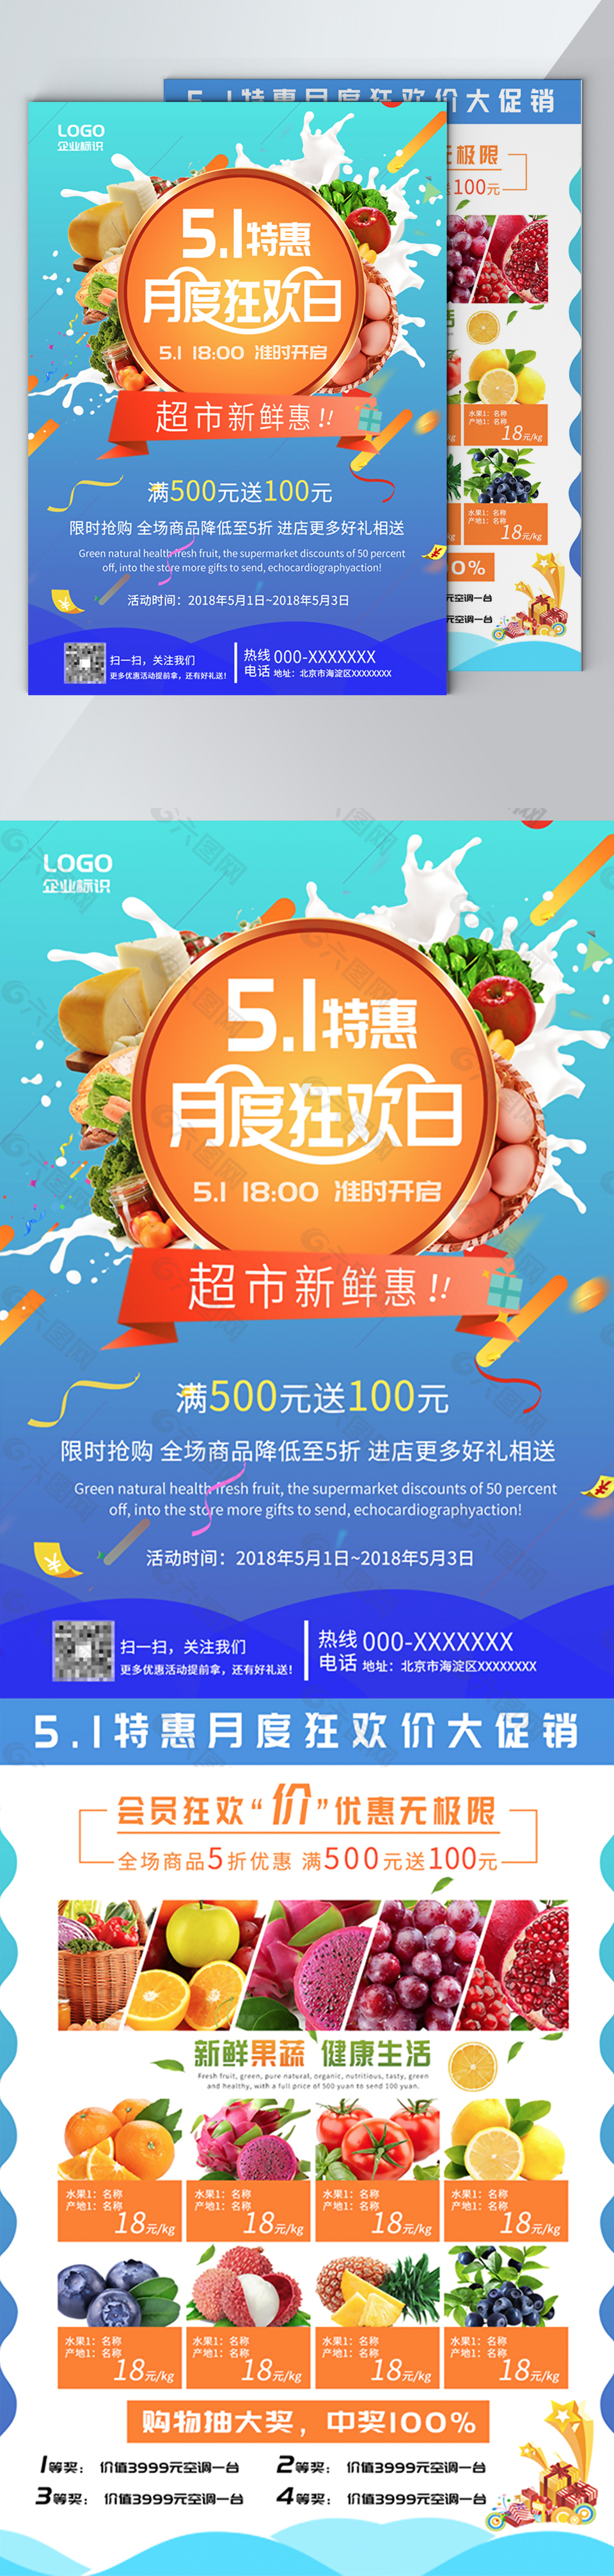 5.1特惠狂欢超市促销蓝色清爽DM单页